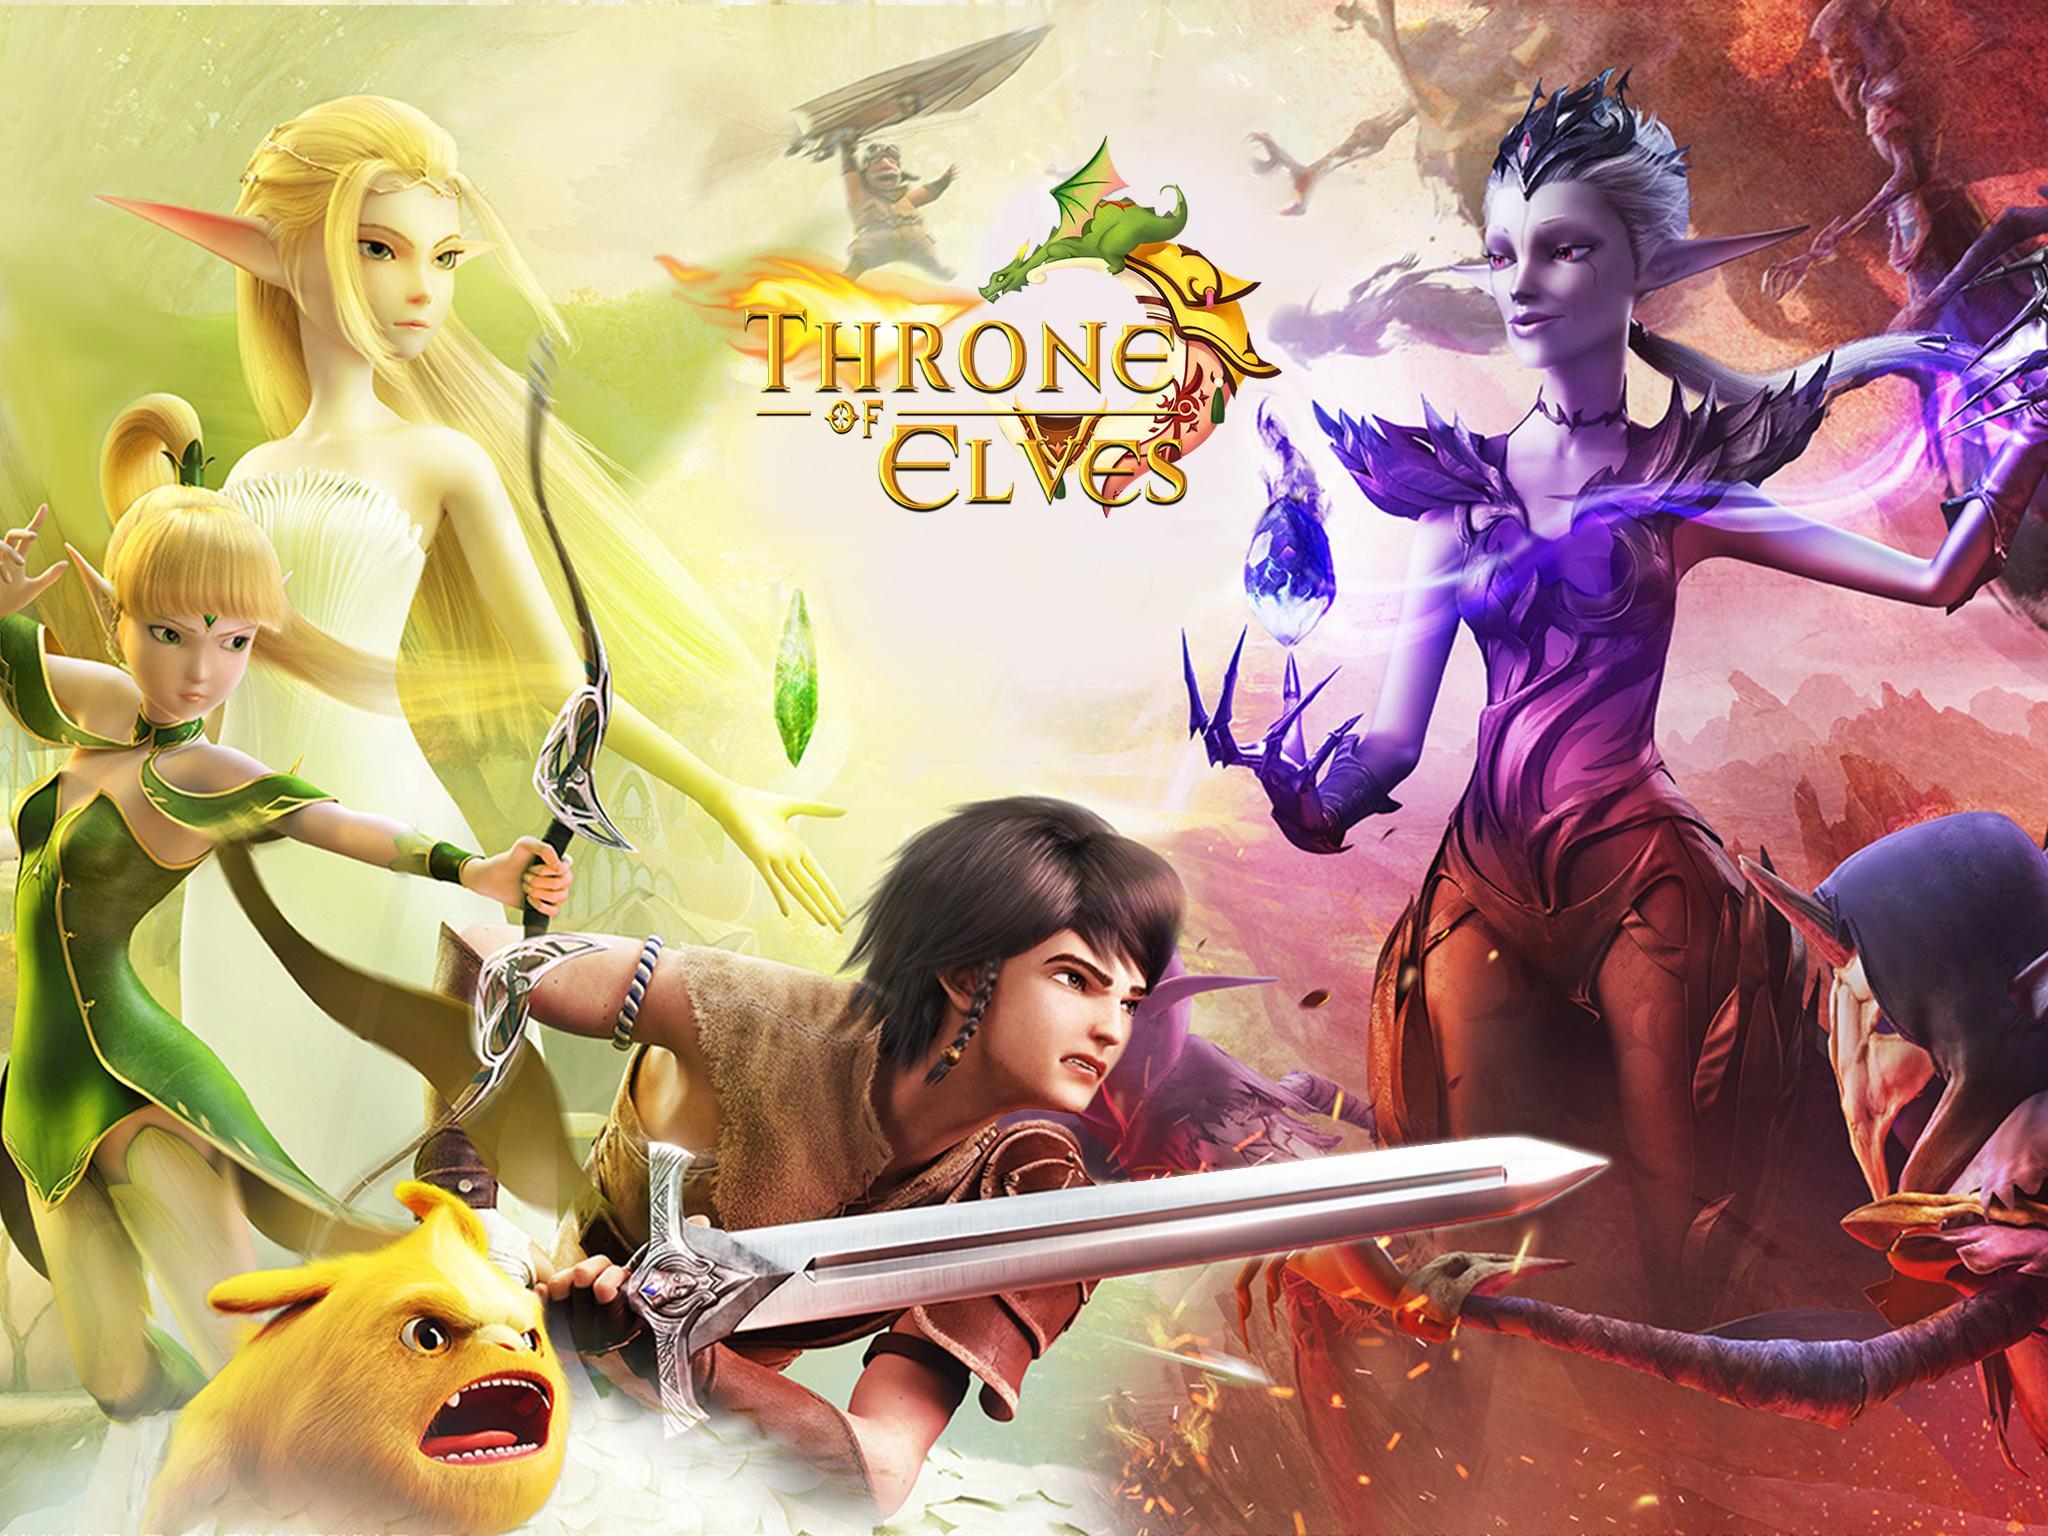 Screenshot 1 of Throne of Elves: 3D 애니메이션 액션 MMORPG 